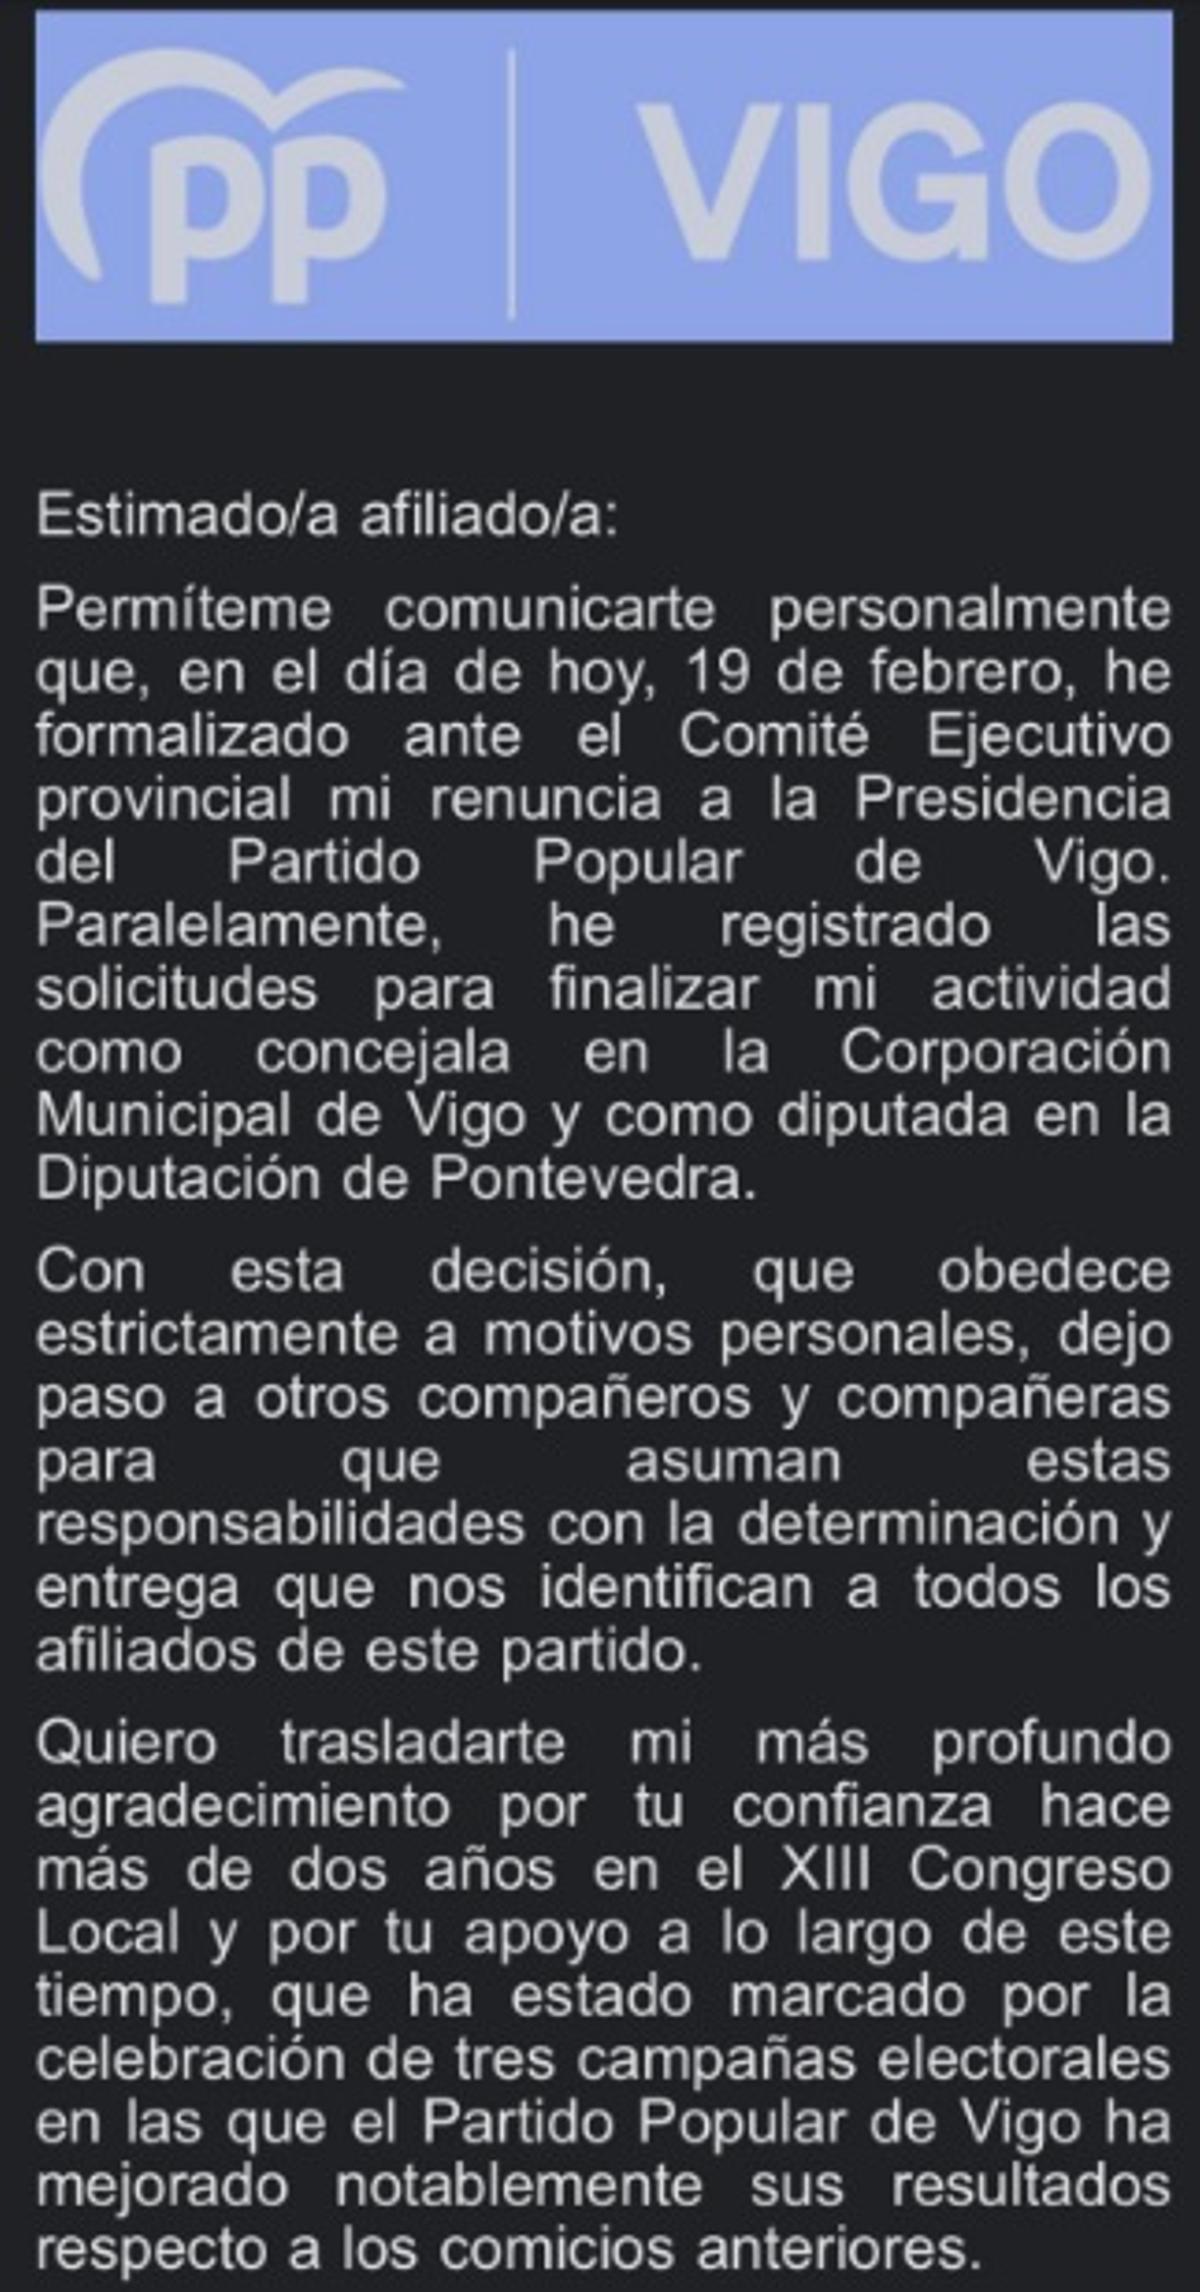 Carta de Marta Fernández-Tapias a los militantes del PP de Vigo.